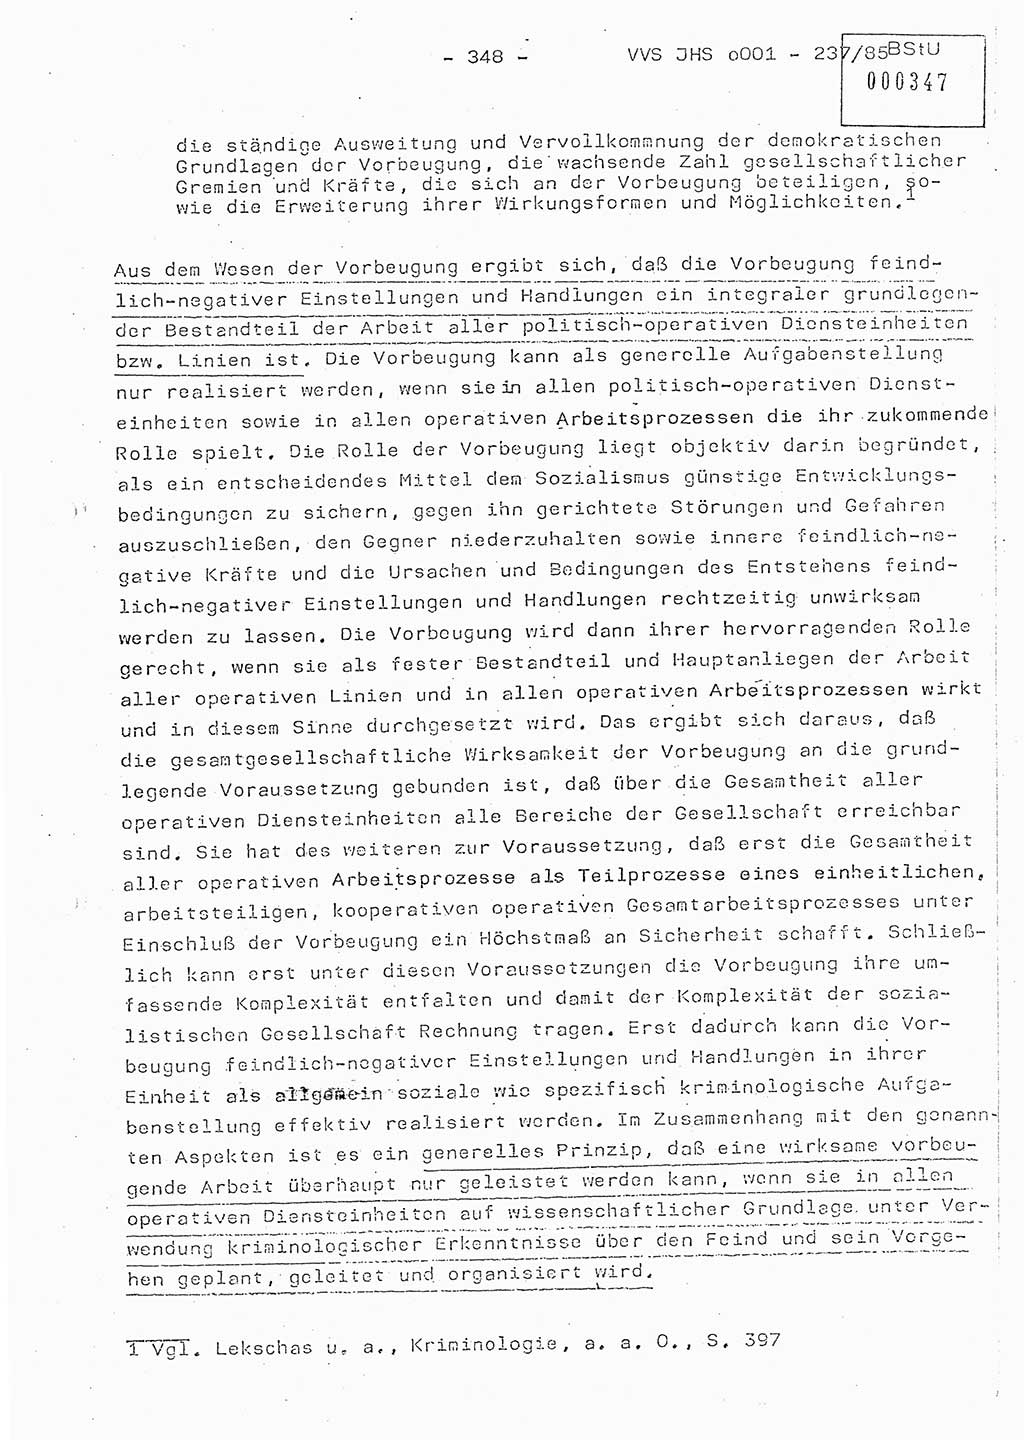 Dissertation Oberstleutnant Peter Jakulski (JHS), Oberstleutnat Christian Rudolph (HA Ⅸ), Major Horst Böttger (ZMD), Major Wolfgang Grüneberg (JHS), Major Albert Meutsch (JHS), Ministerium für Staatssicherheit (MfS) [Deutsche Demokratische Republik (DDR)], Juristische Hochschule (JHS), Vertrauliche Verschlußsache (VVS) o001-237/85, Potsdam 1985, Seite 348 (Diss. MfS DDR JHS VVS o001-237/85 1985, S. 348)